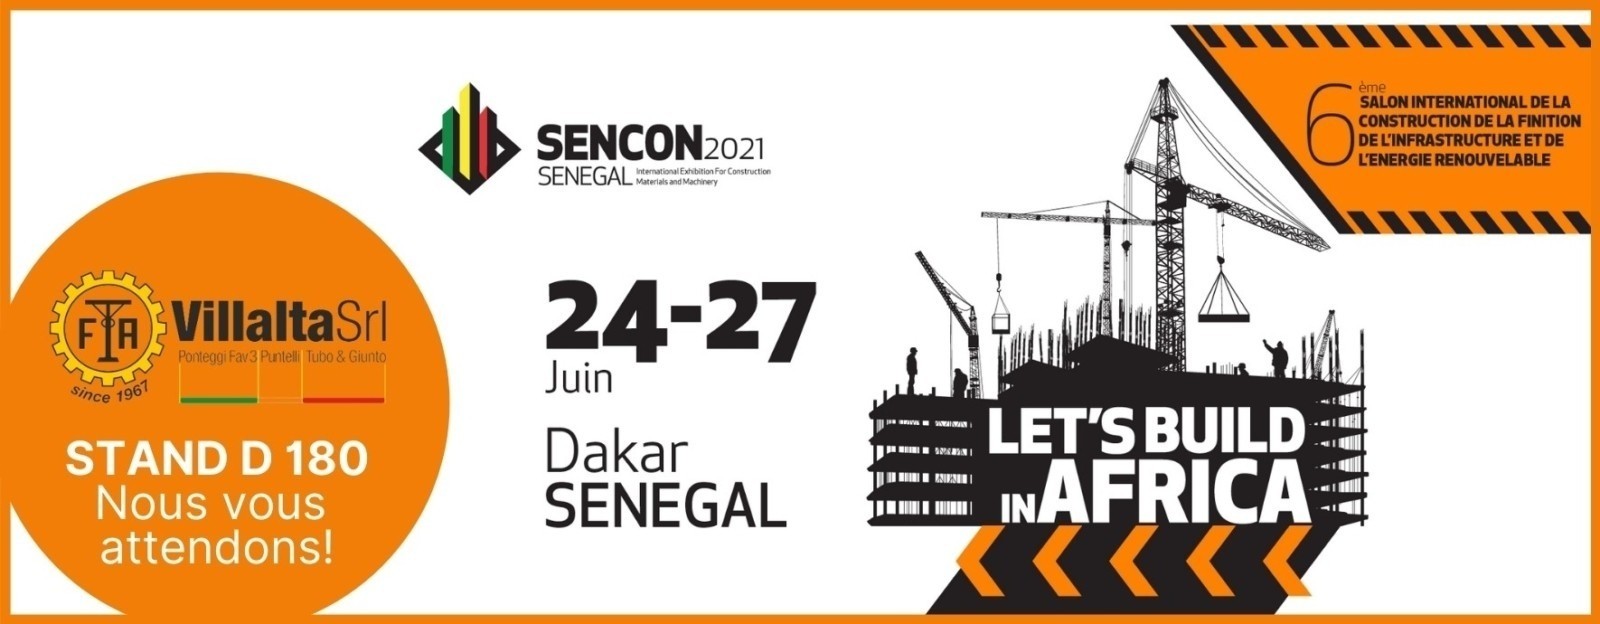 SENCON 2021 SENEGAL